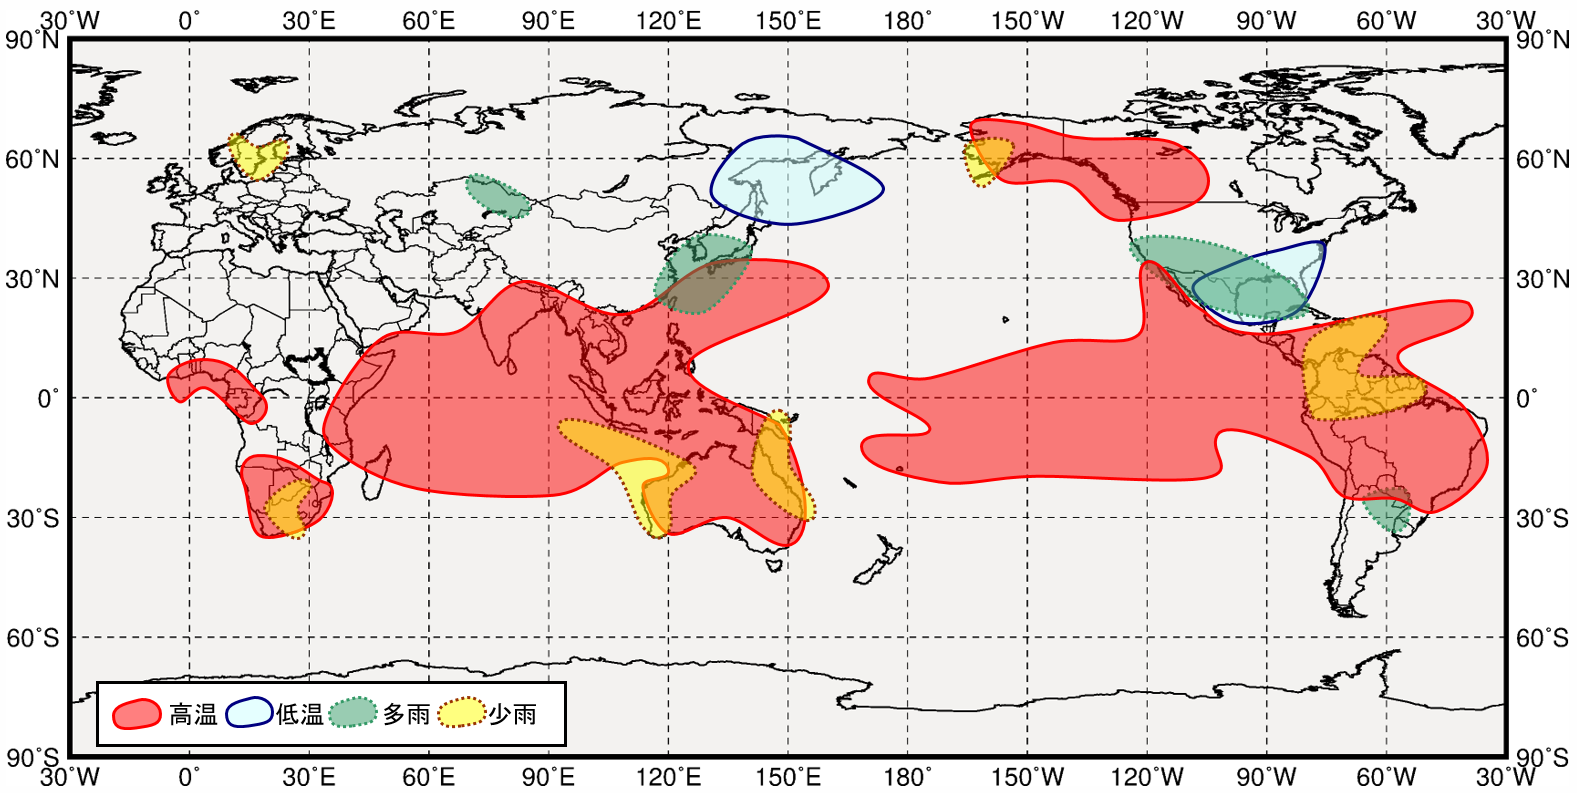 エルニーニョ現象発生時の世界の１２月から２月にかけての気温と降水量の傾向の分布図